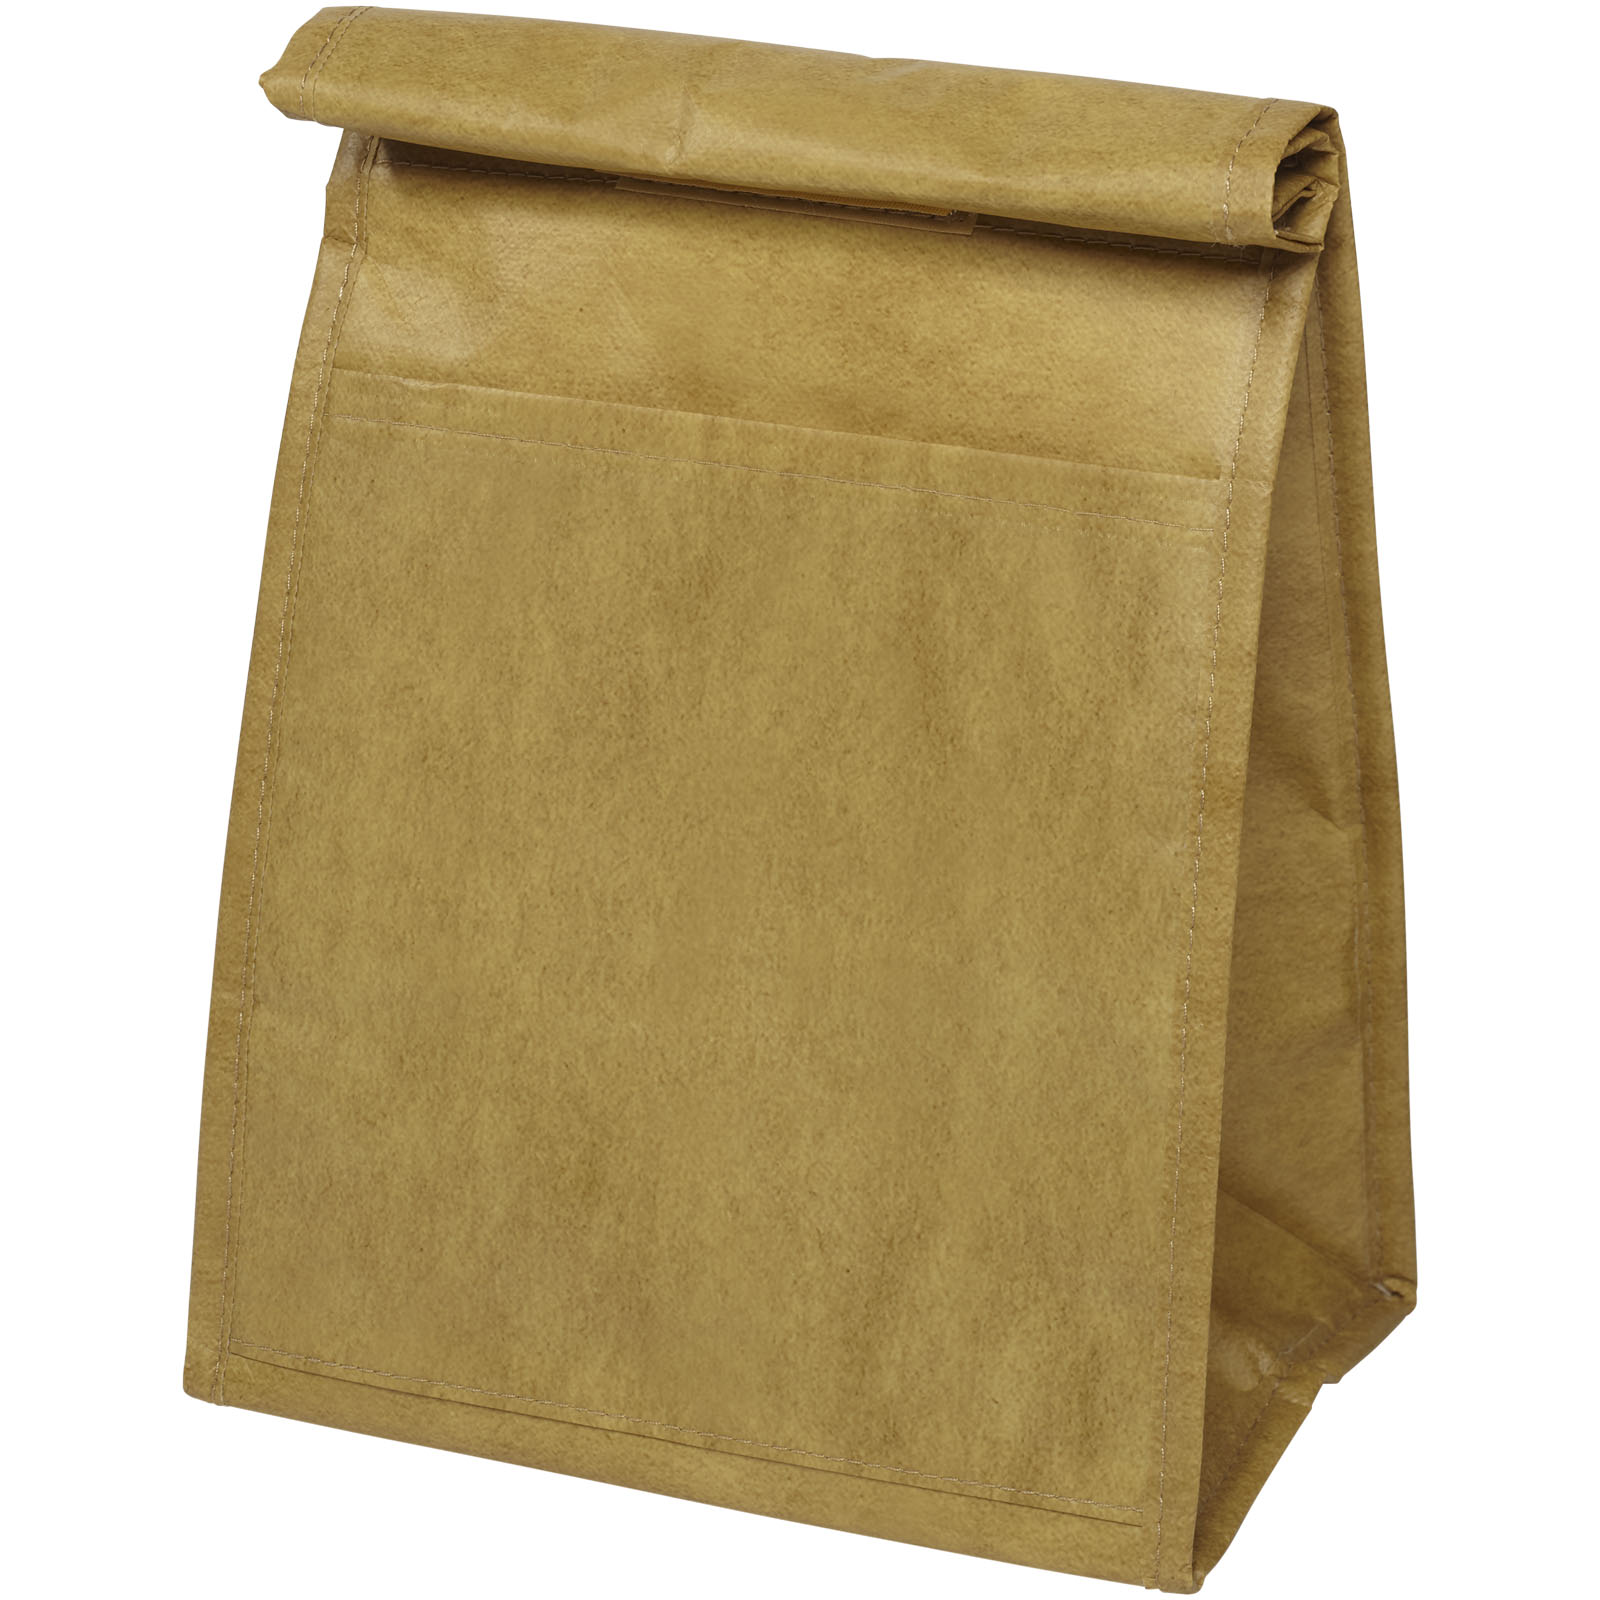 Laminovaná chladicí taška DADA s papírovým designem - natural